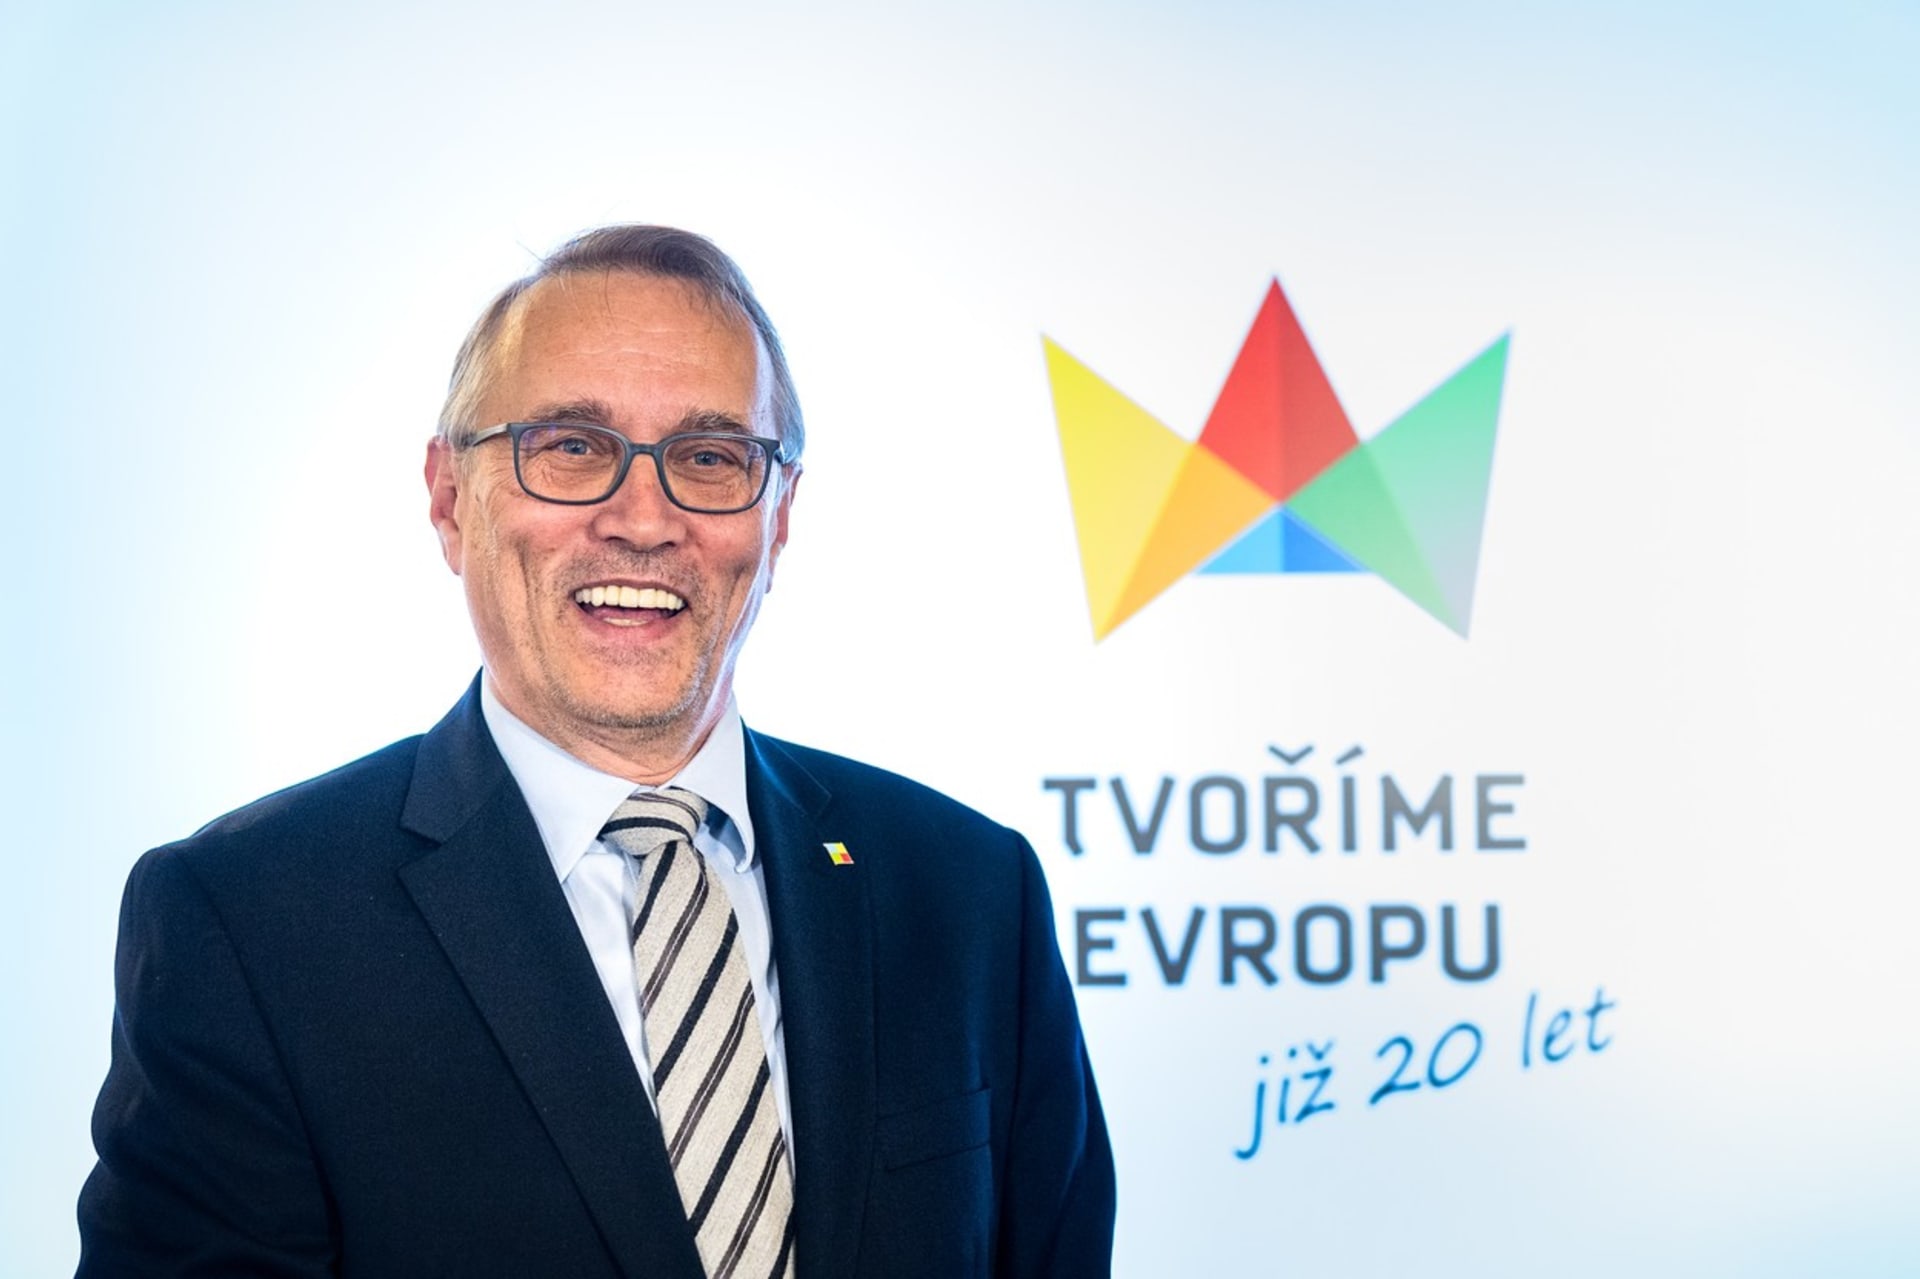 Ministr pro evropské záležitosti Martin Dvořák (STAN)